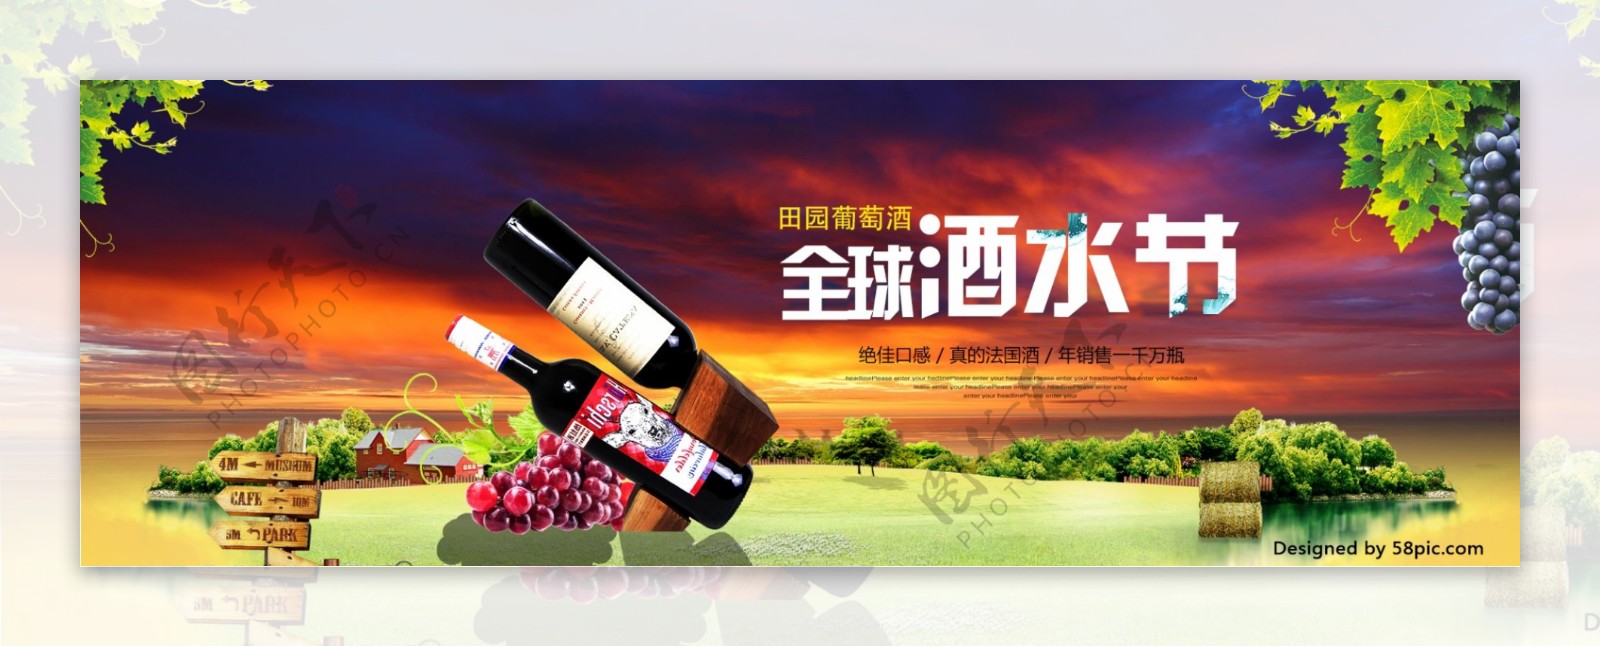 电商淘宝天猫全球酒水节葡萄酒海报banner模板设计